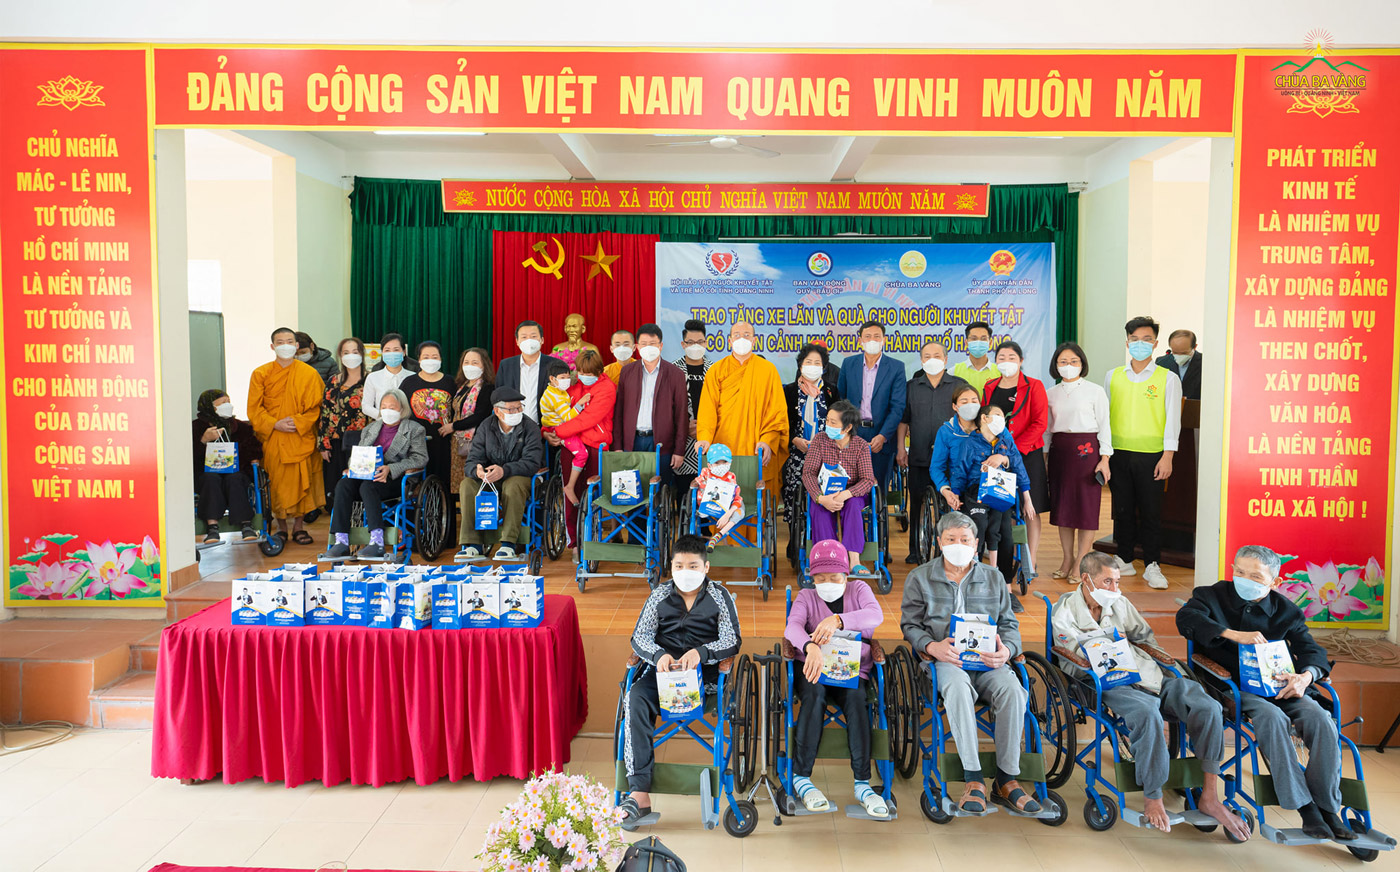 Tại xã Sơn Dương (TP. Hạ Long), những phần quà ý nghĩa đã được trao tặng đến những người khuyết tật có hoàn cảnh khó khăn